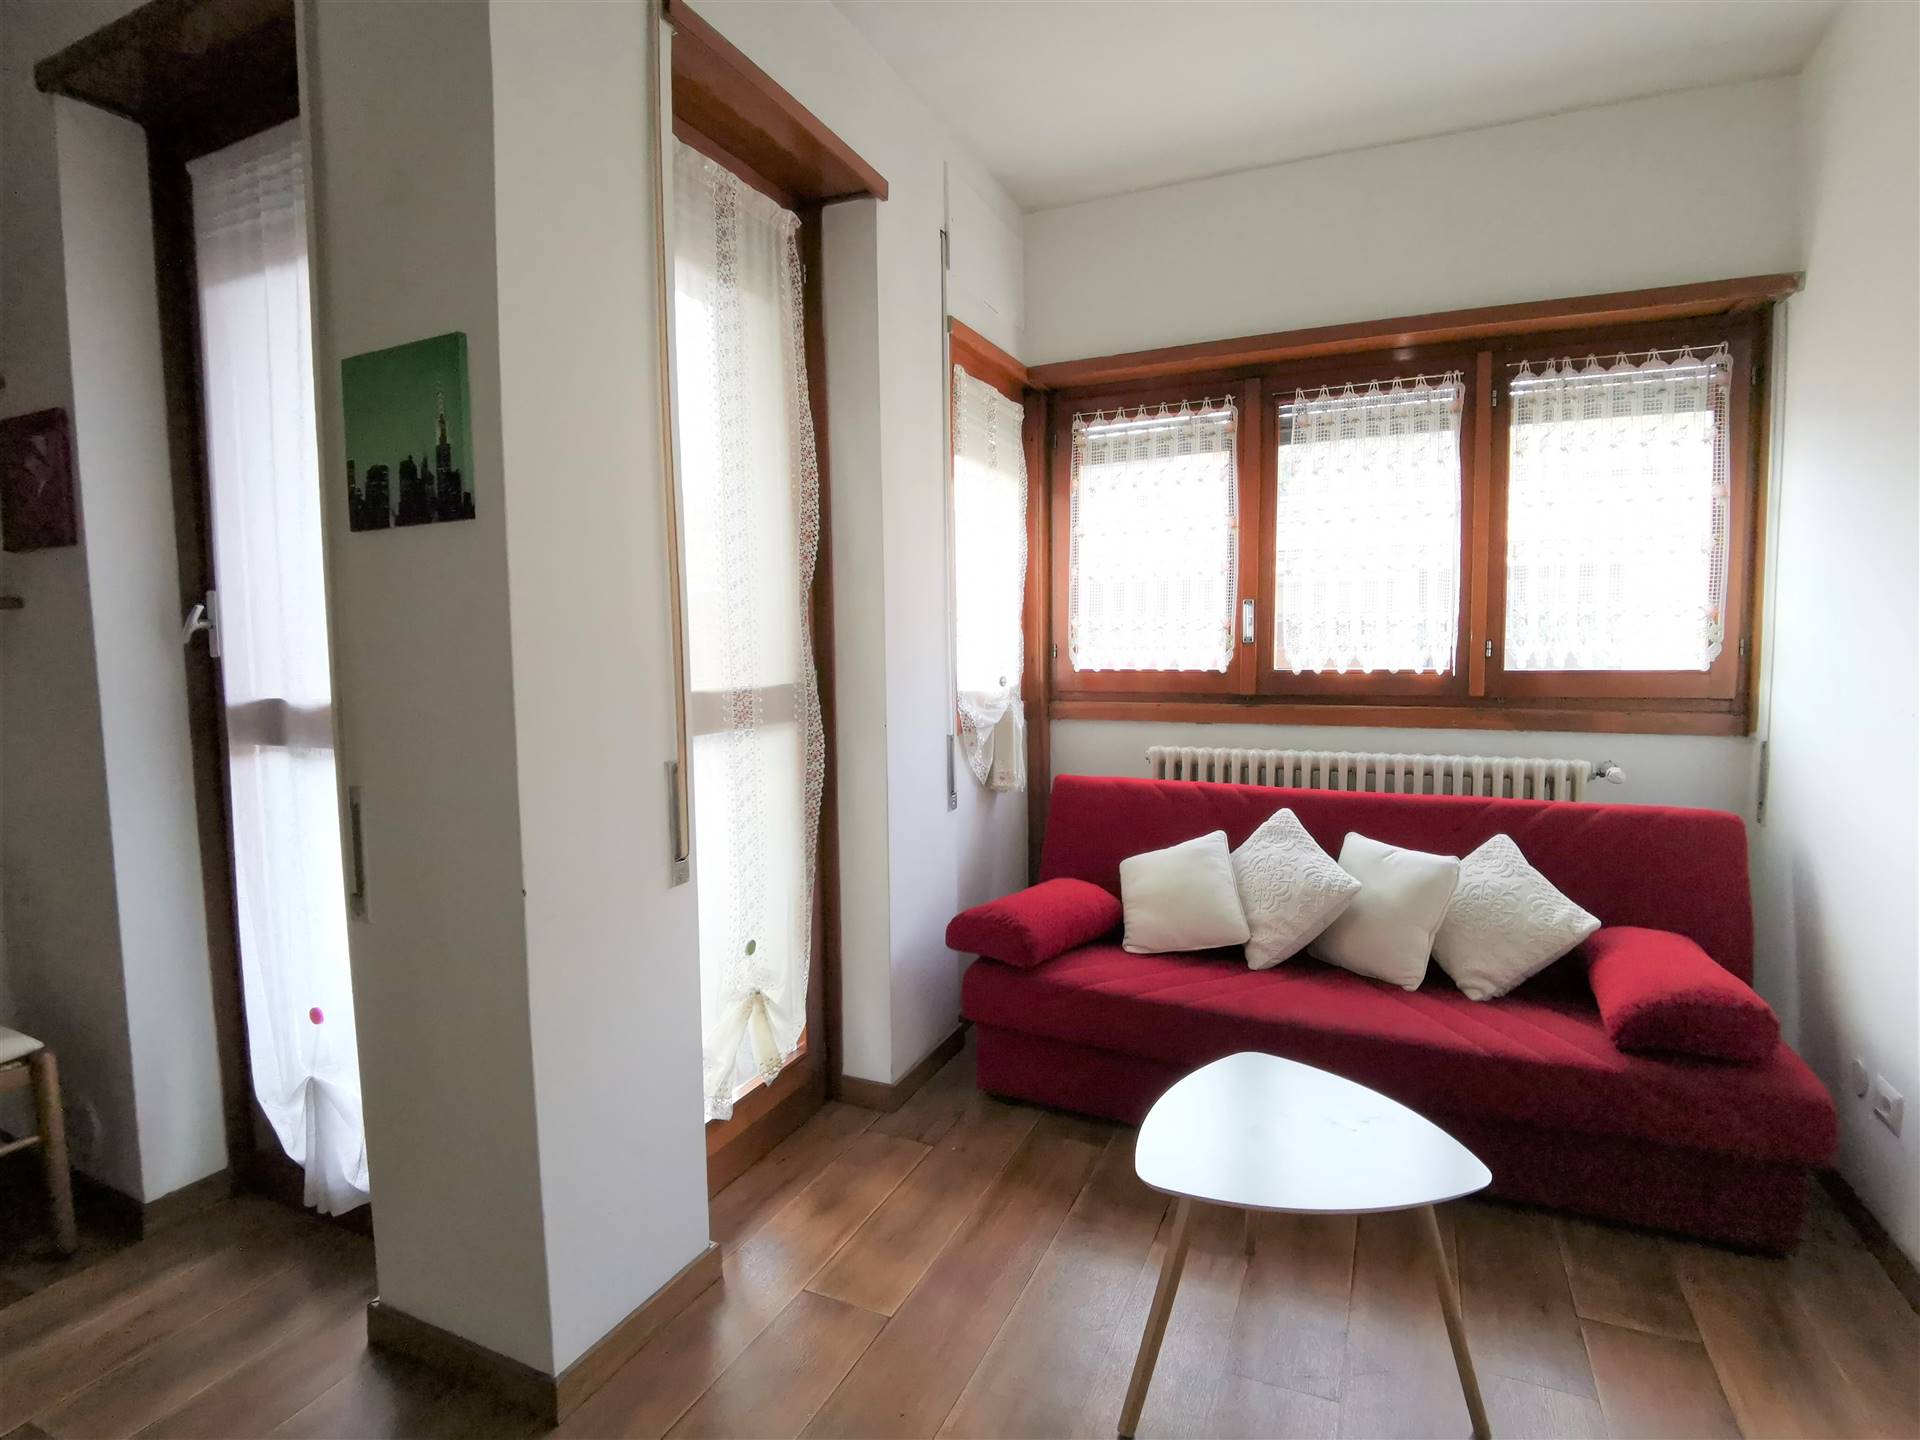 Appartamento in affitto a Sondrio, 2 locali, zona ro zona Garibaldi, prezzo € 390 | PortaleAgenzieImmobiliari.it